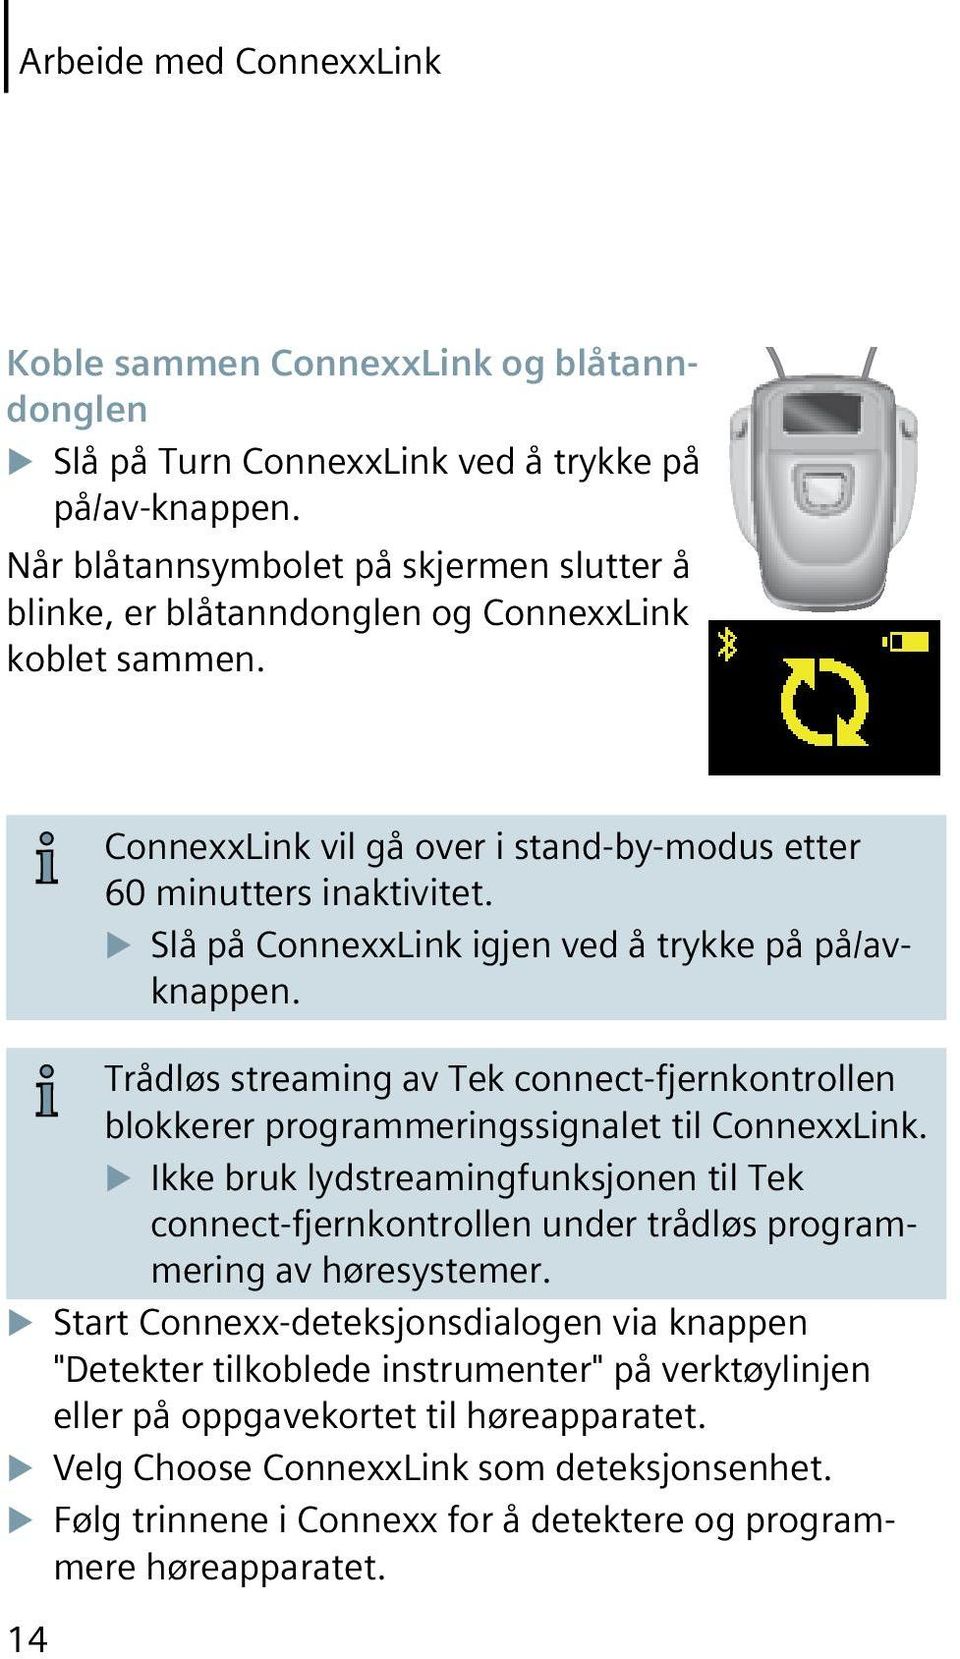 u Slå på ConnexxLink igjen ved å trykke på på/avknappen. Trådløs streaming av Tek connect-fjernkontrollen blokkerer programmeringssignalet til ConnexxLink.